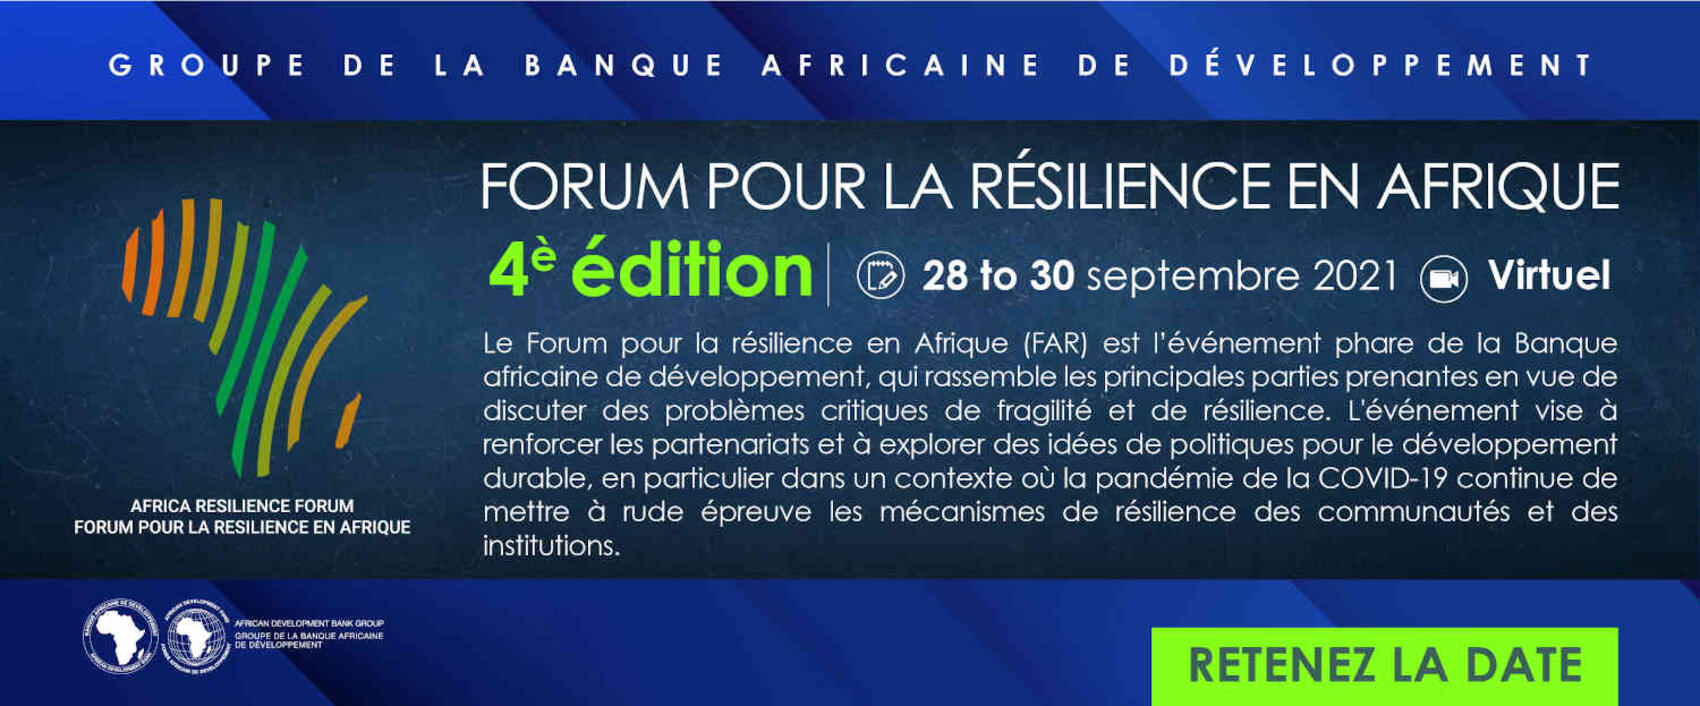 Le 4ème Forum pour la résilience en Afrique, du 28 au 30 septembre